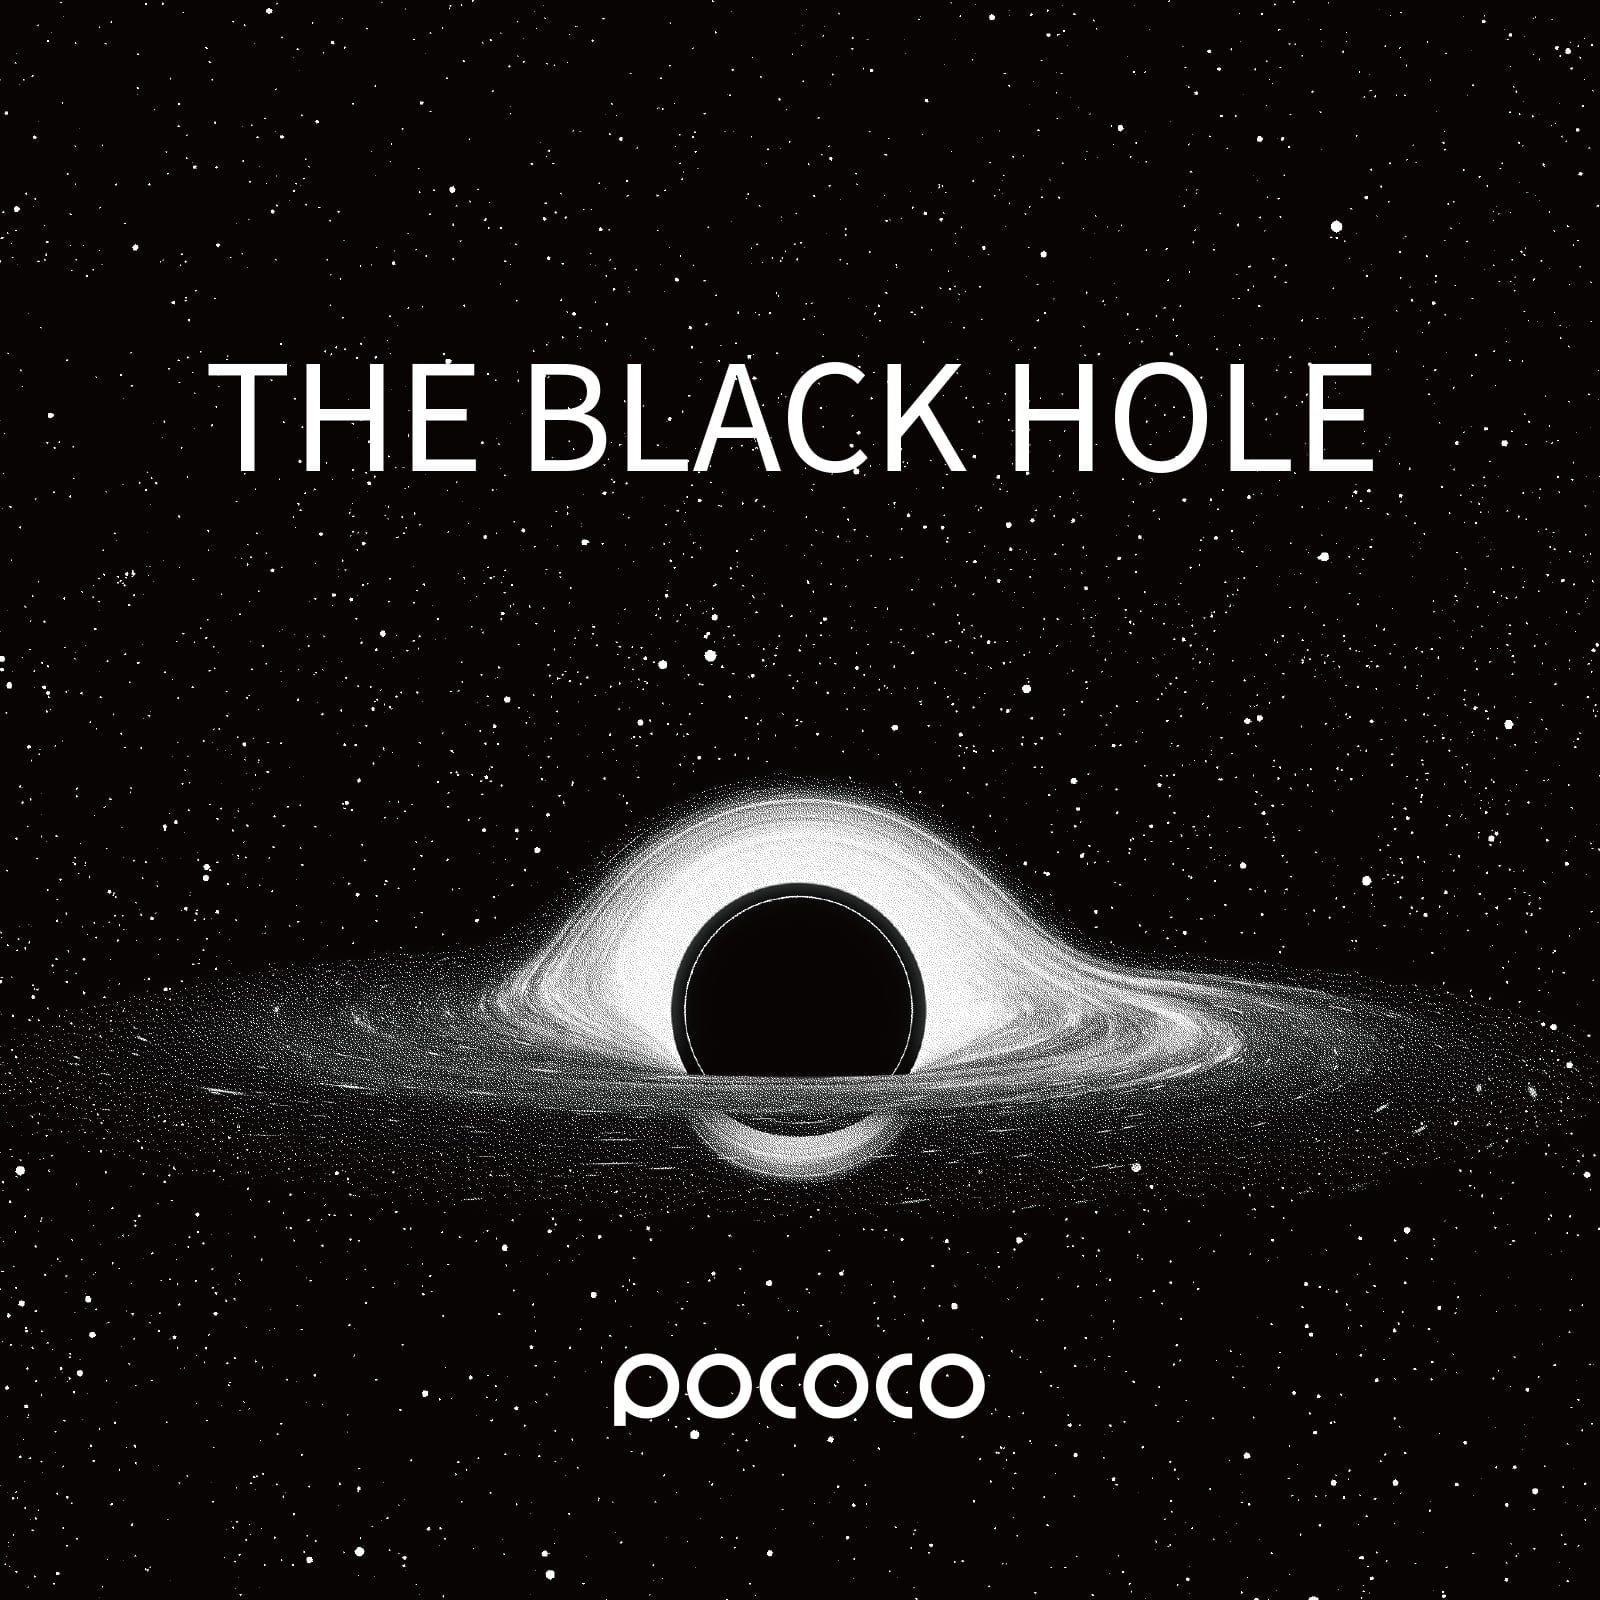 The Black Hole - Pococo Galaxy Projector Discs